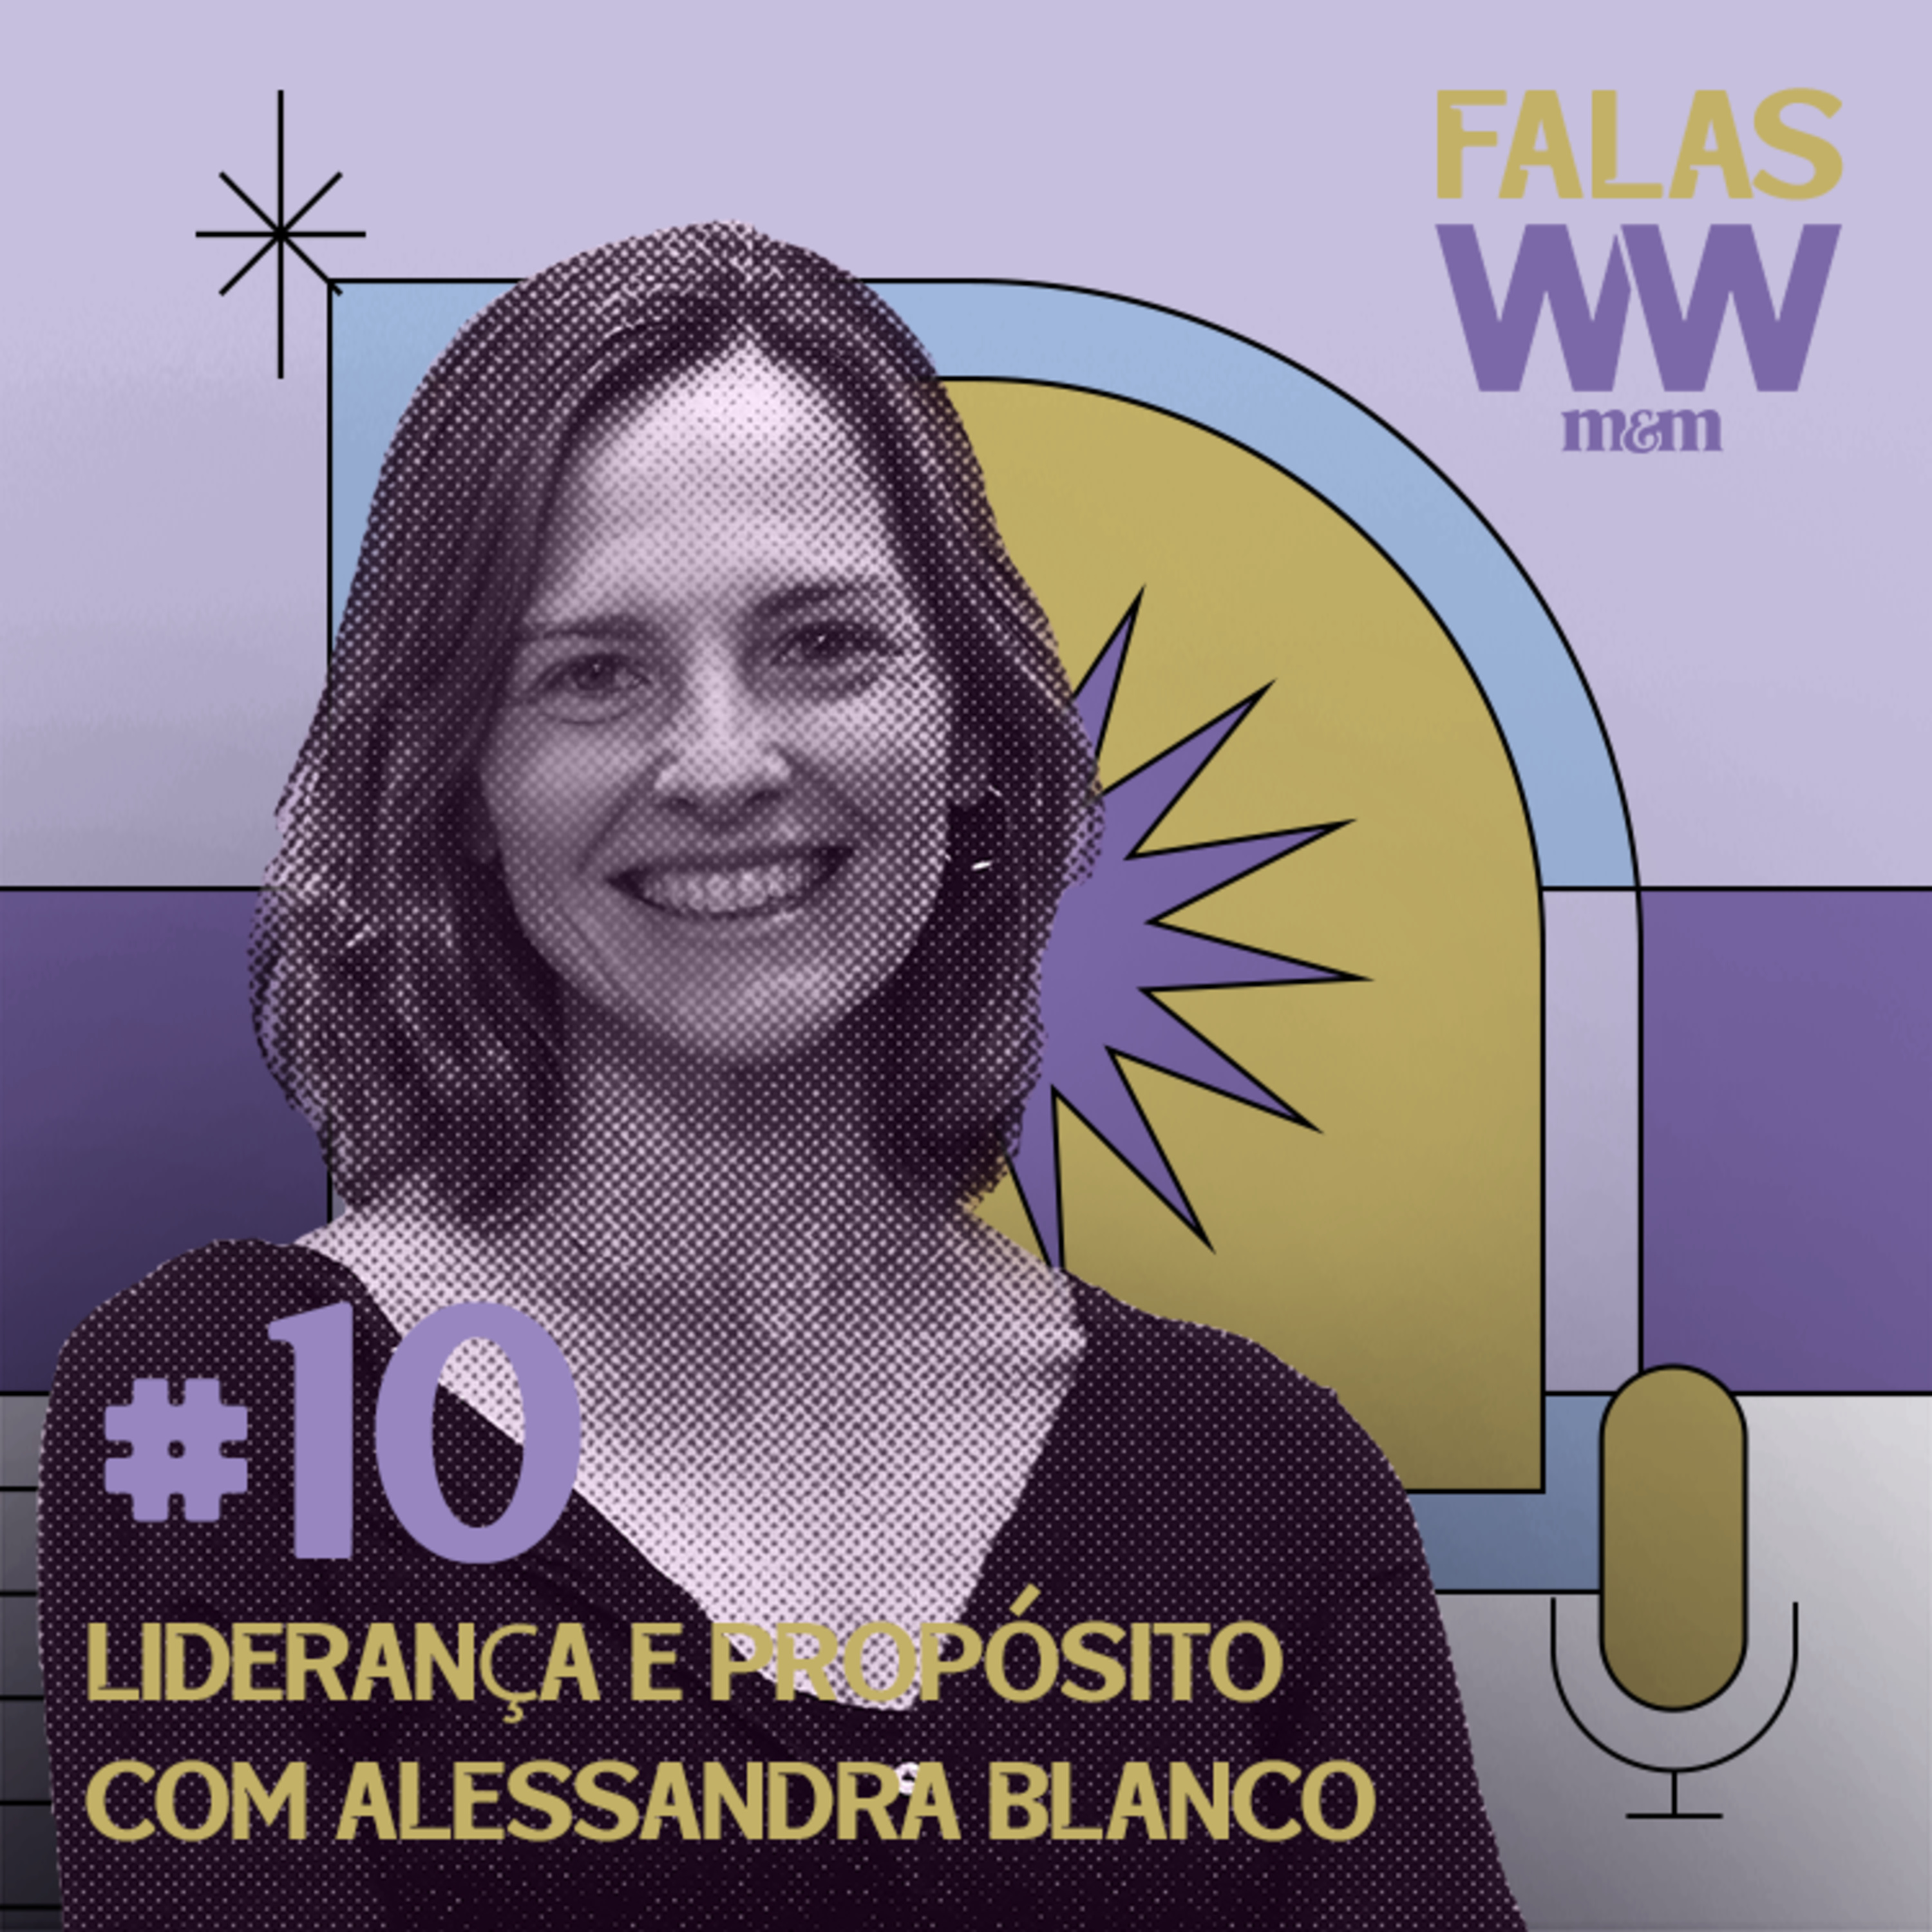 #10: Liderança e propósito com Alessandra Blanco